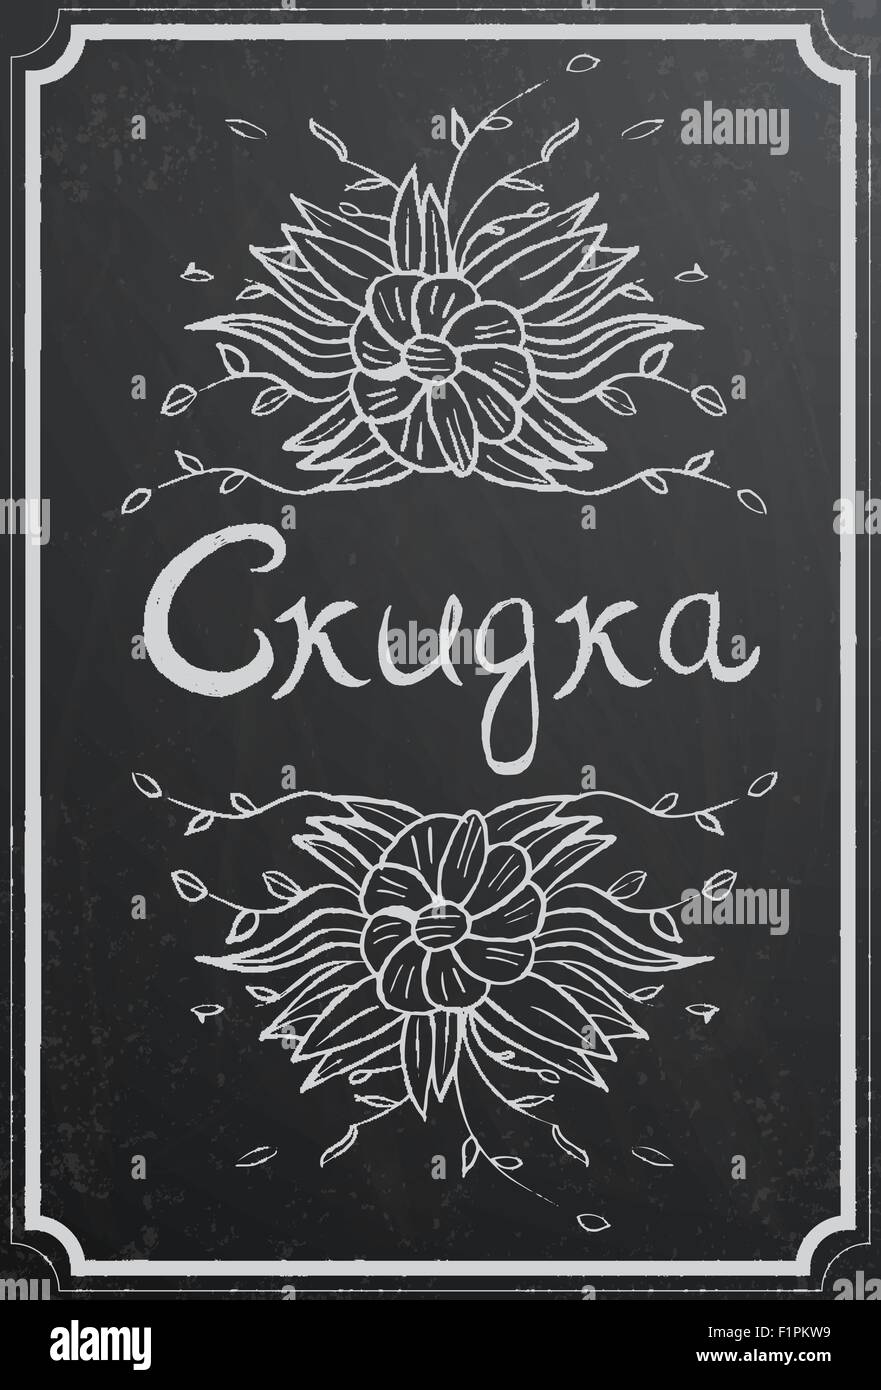 Rabatt-Konzept mit kyrillischen Text "Rabatt" und Blume auf die schwarze Tafel Textur. Vintage Vektor-illustration Stock Vektor